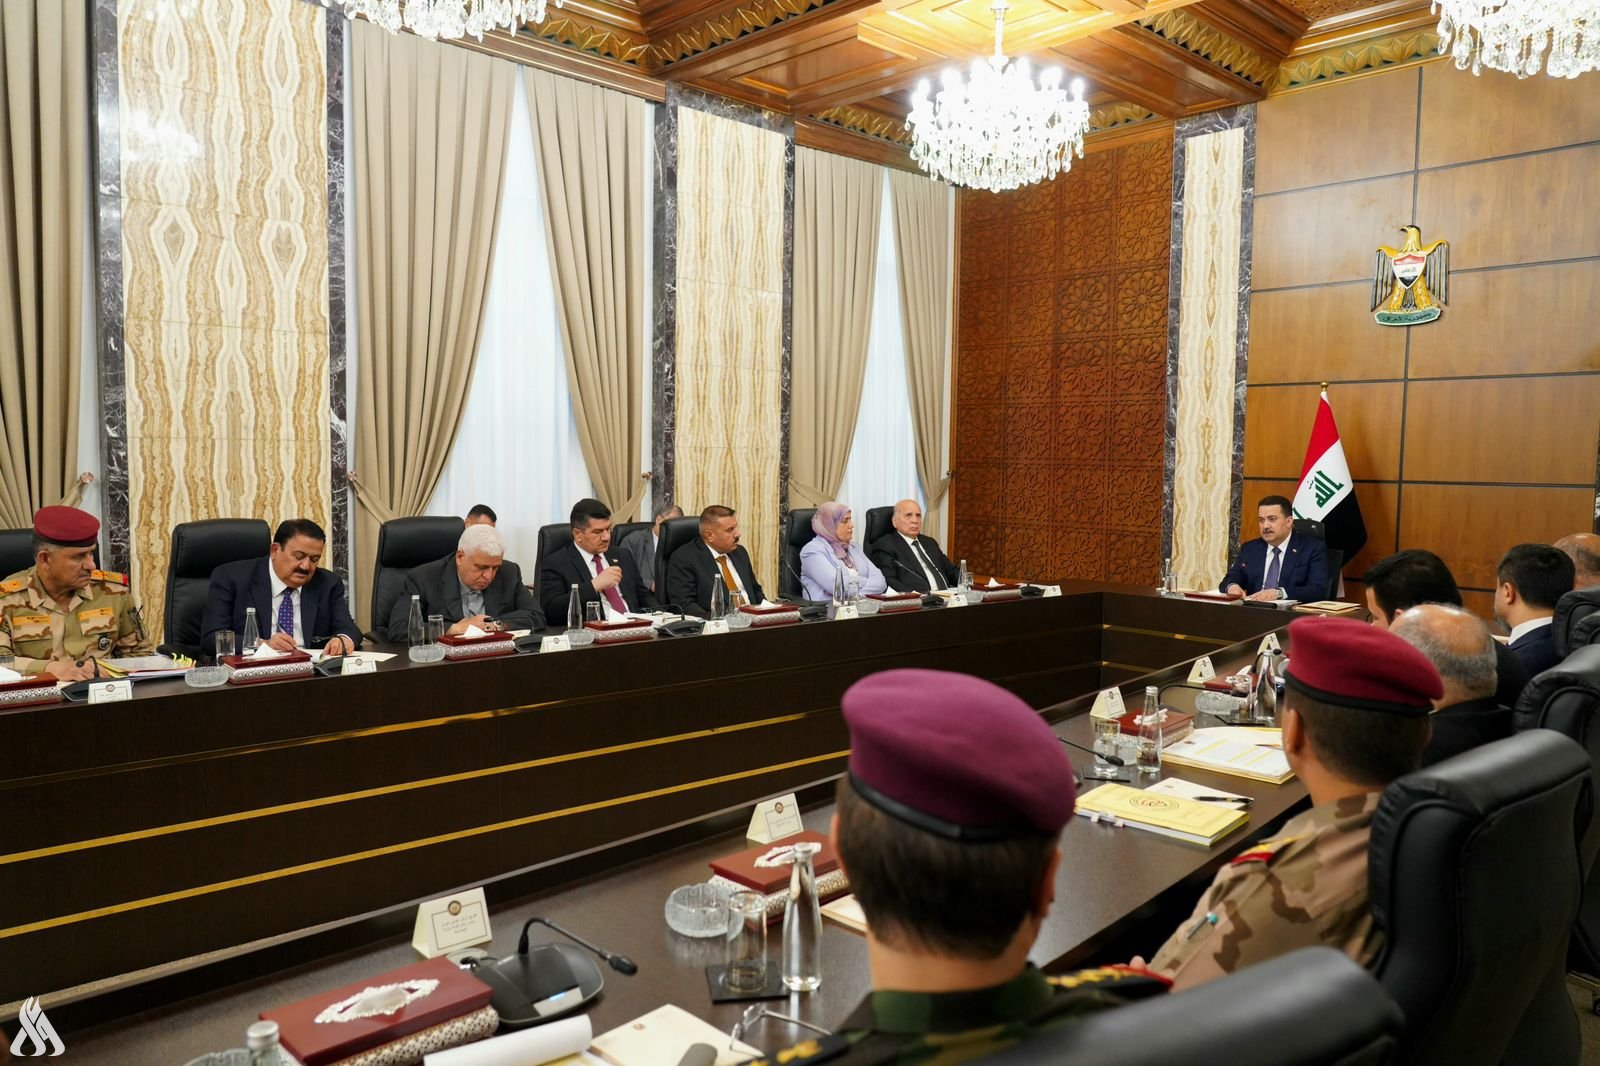 المجلس الوزاري برئاسة القائد العام يعلن إقرار ستراتيجية الأمن الوطني